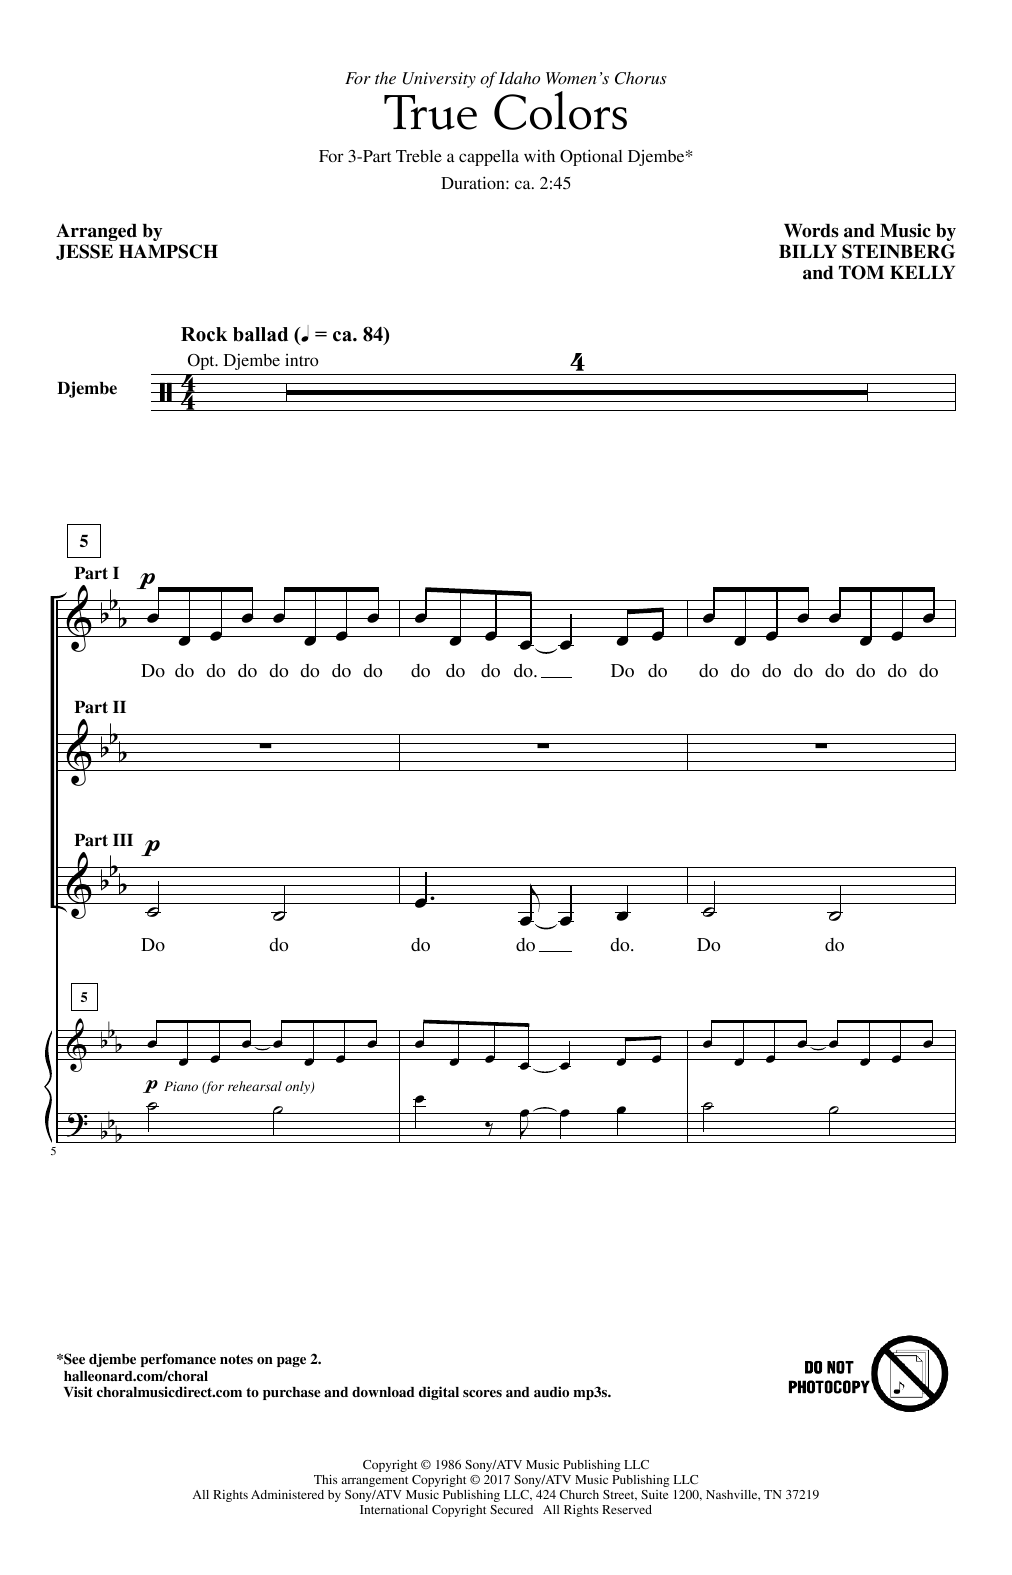 Cyndi Lauper True Colors (arr. Jesse Hampsch) Sheet Music Notes & Chords for 3-Part Treble - Download or Print PDF